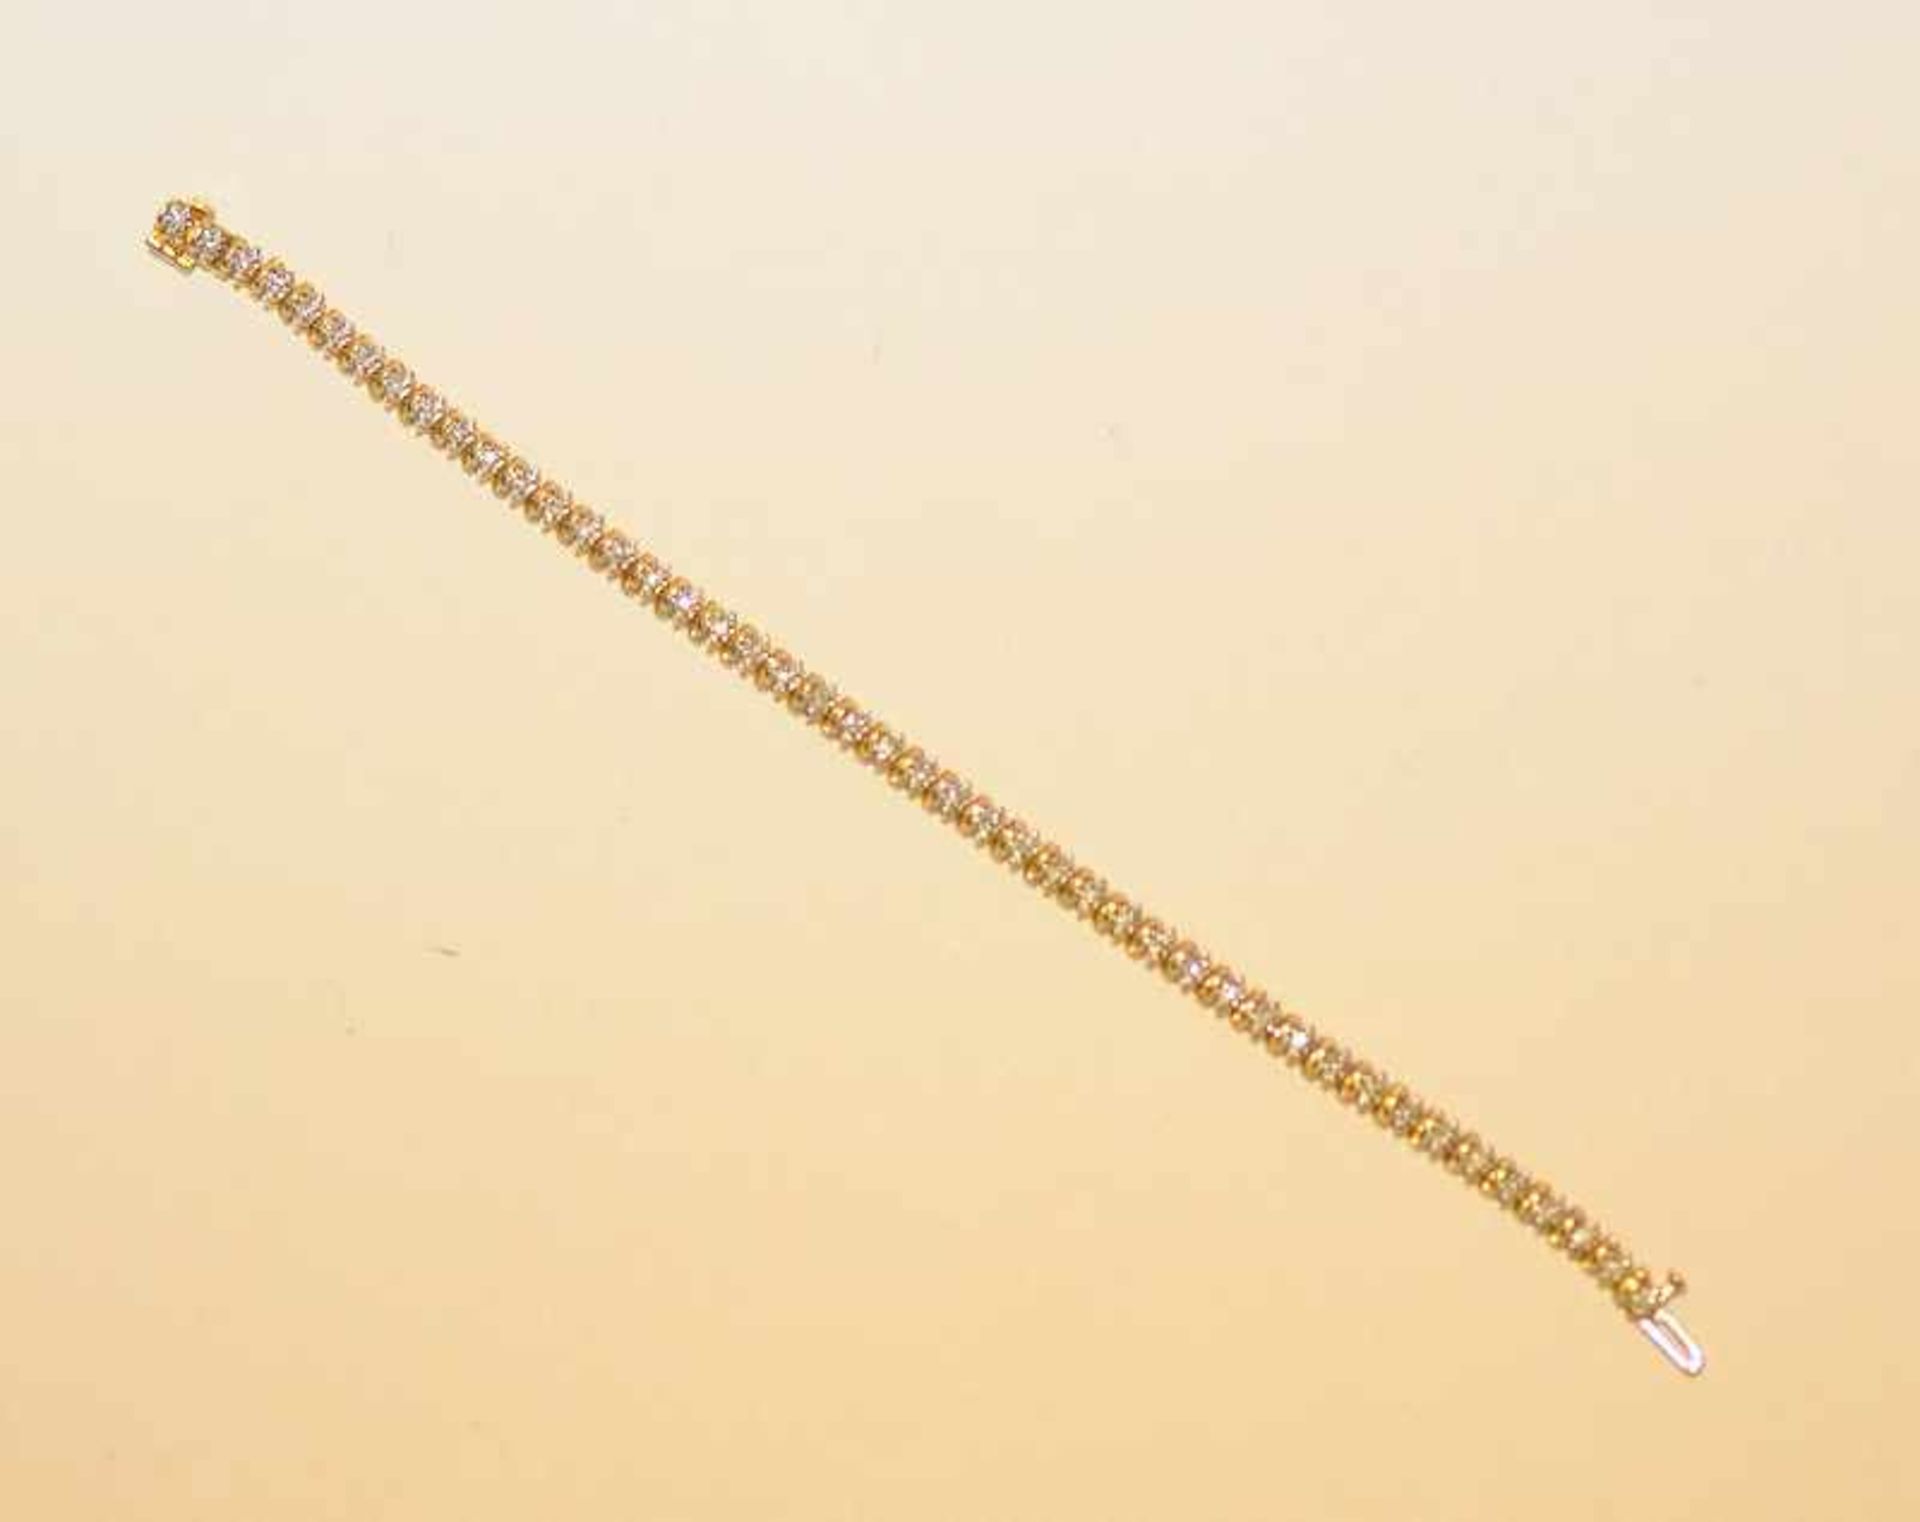 Feines Armband mit Diamantbesatz, 585 GG